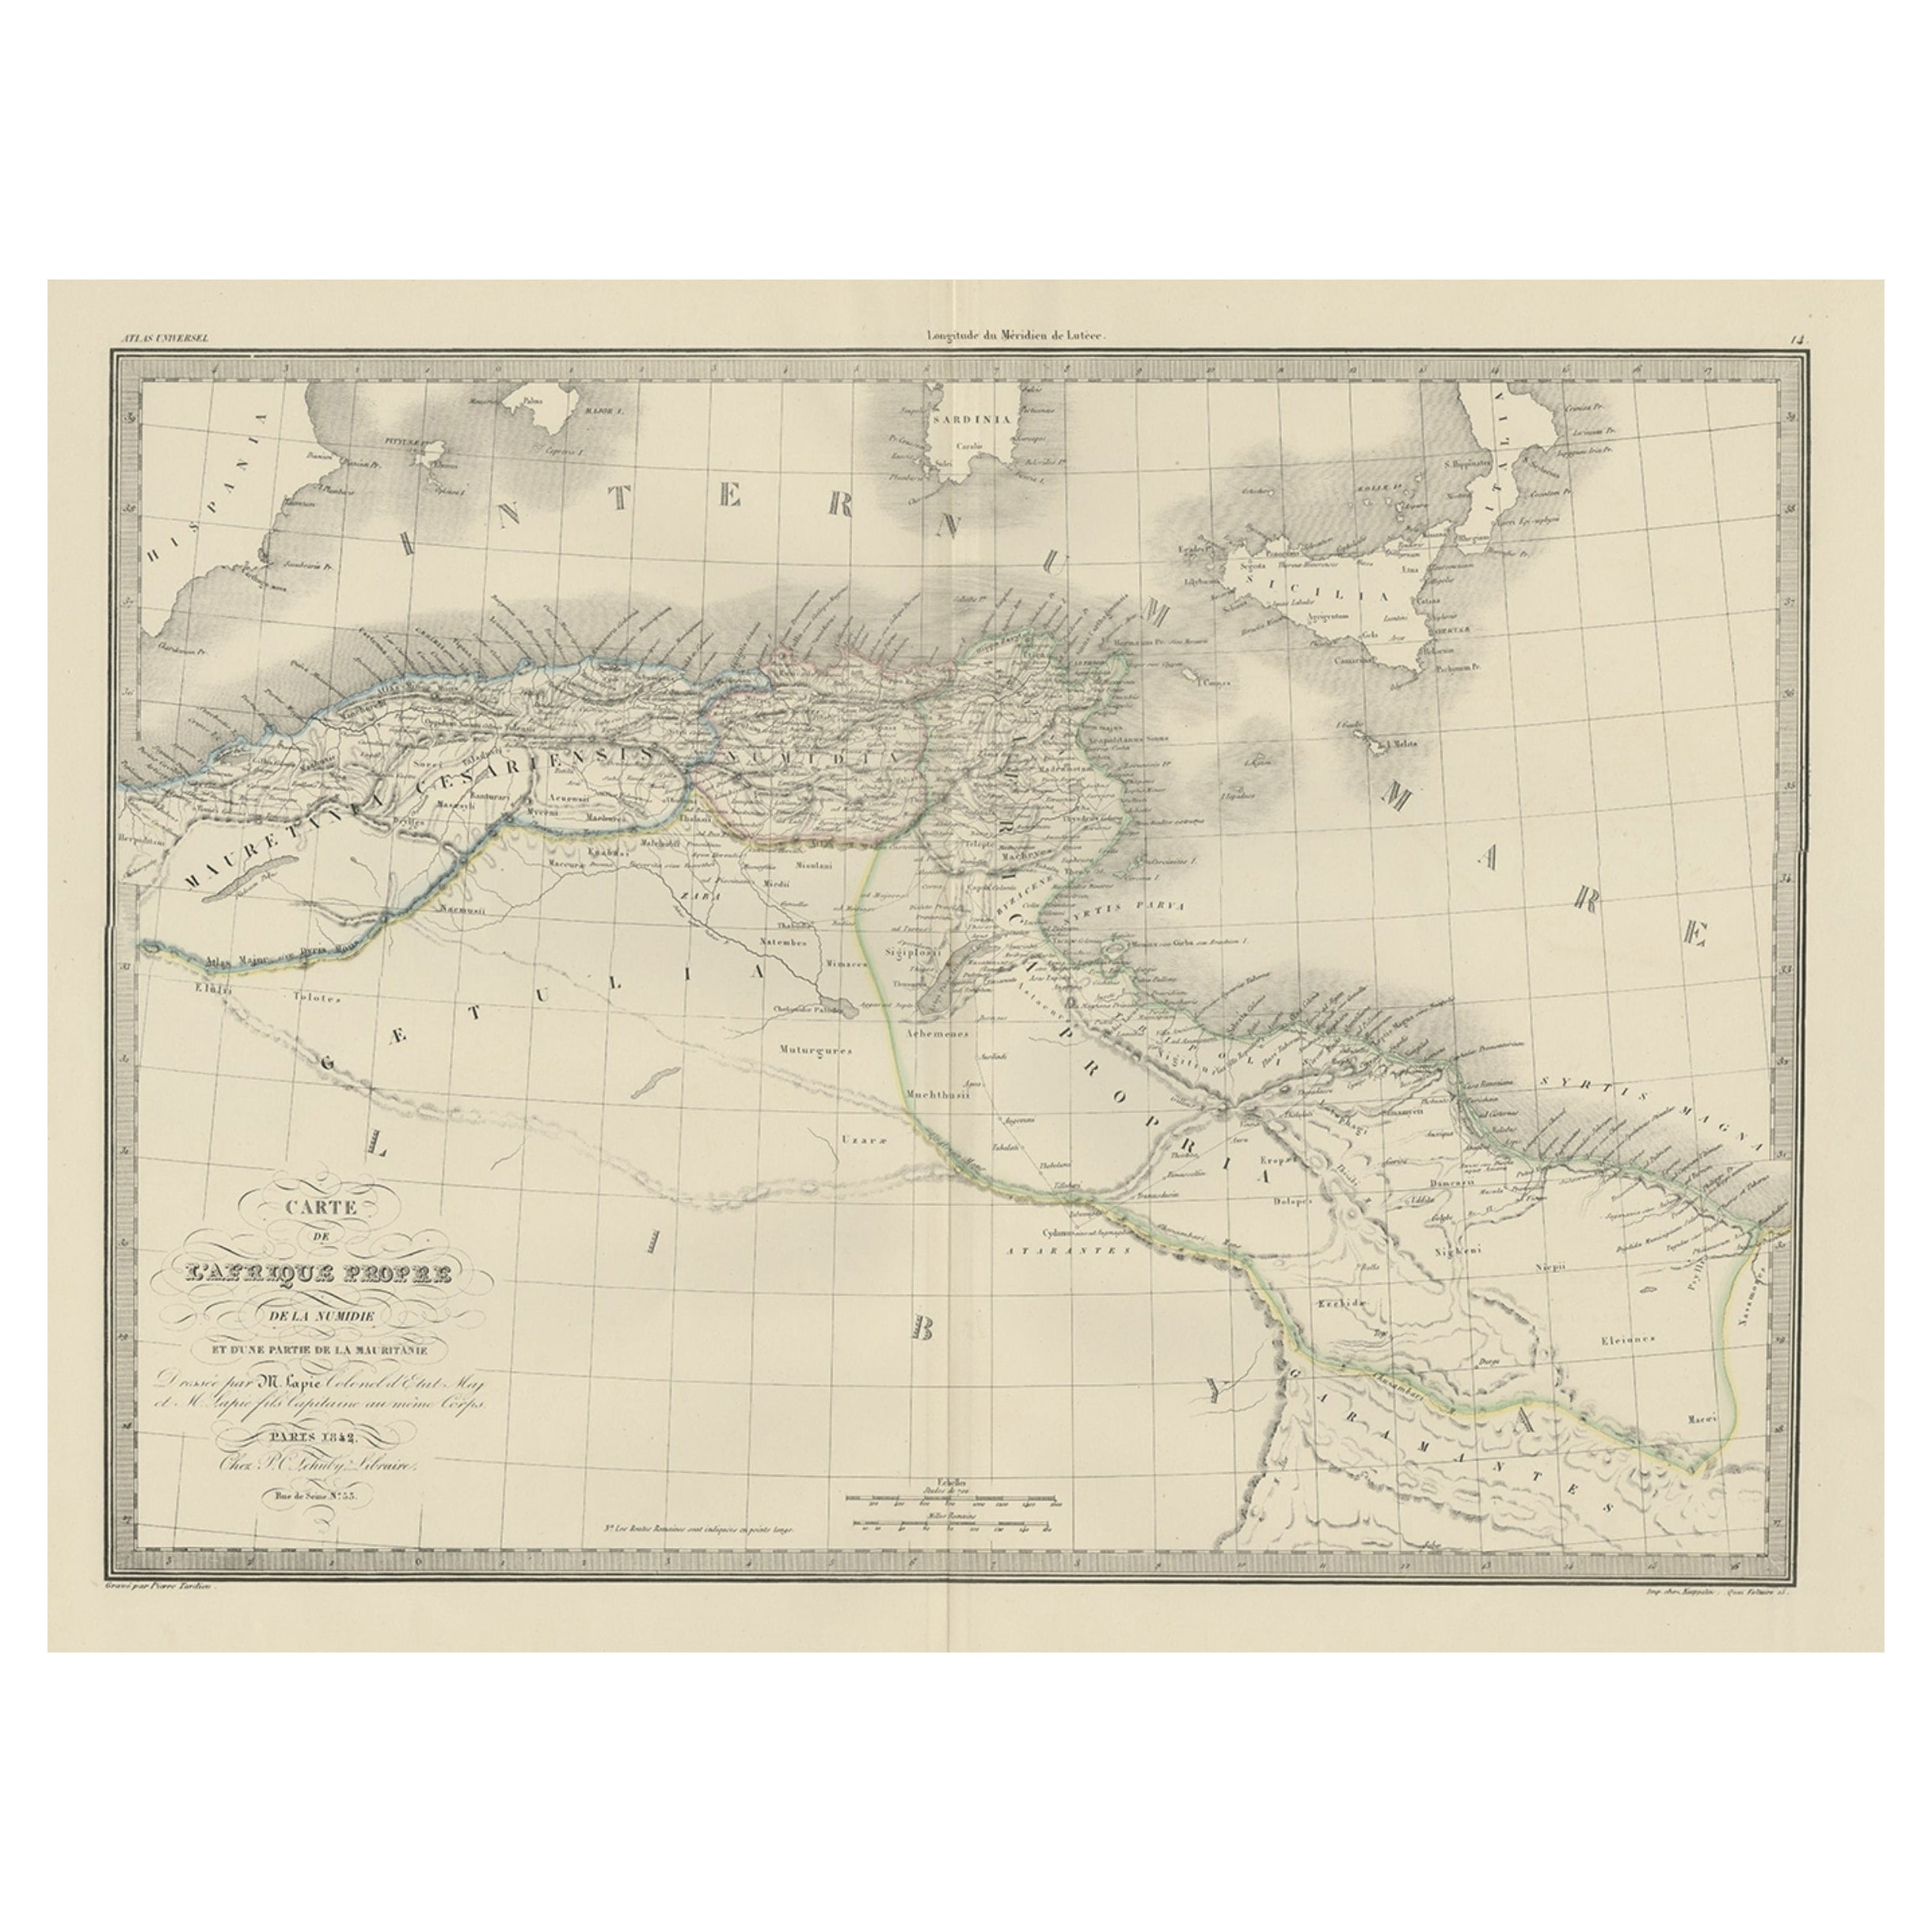 The Empires of Mauritania, Carthage & Numidia 'Barbary Coast', Africa, 1842 For Sale